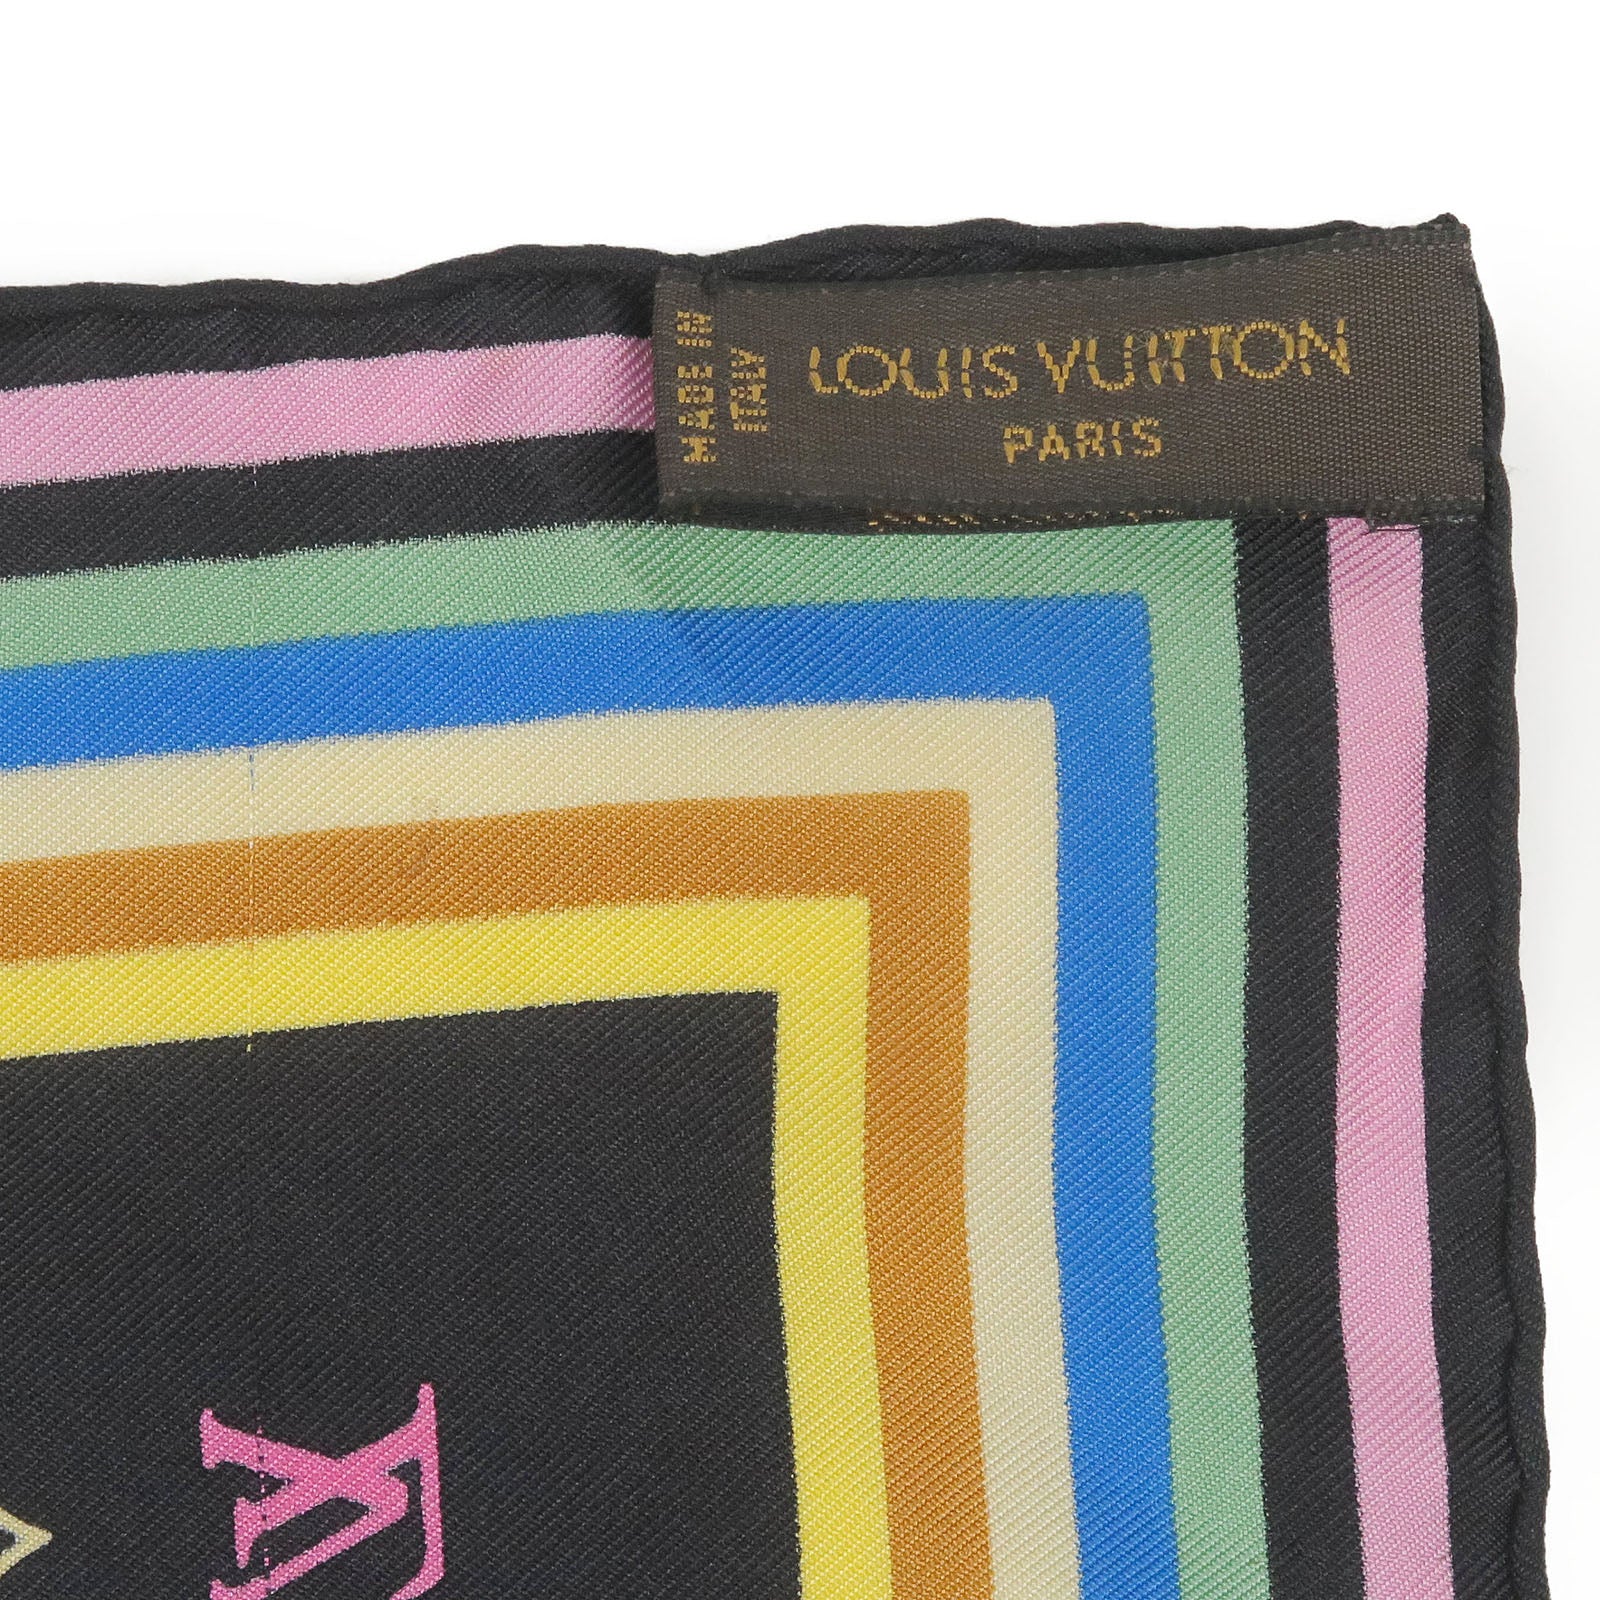 LOUIS VUITTON Confidential Silk Monogram Bandeau Pink - 10% Off